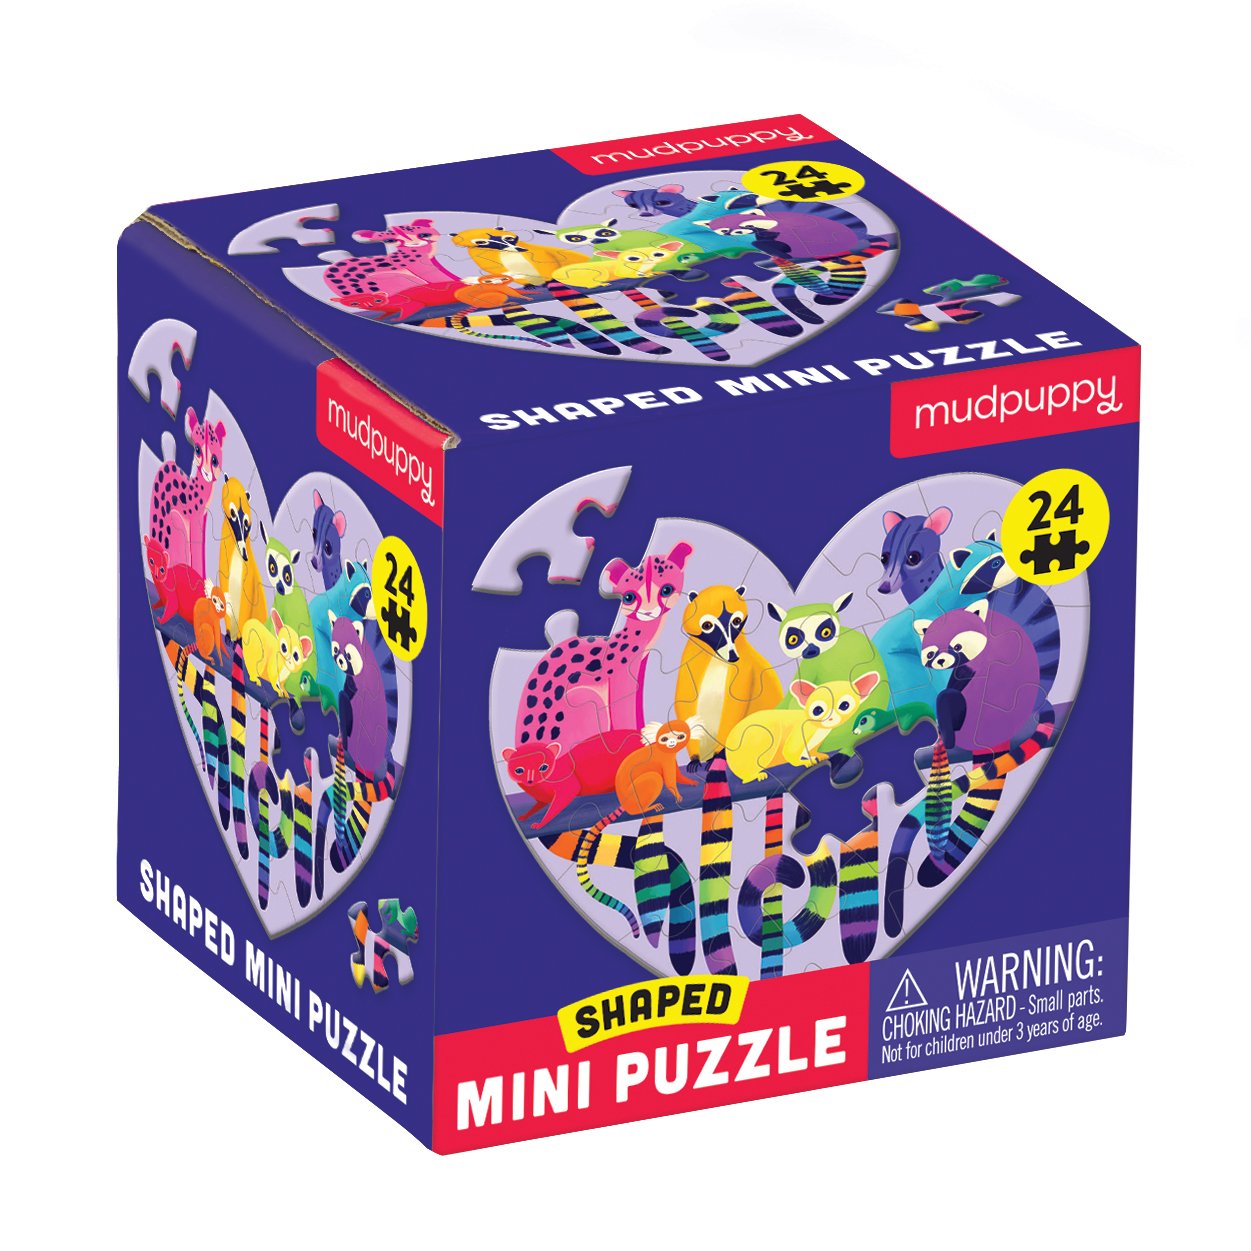 Paris Mini Puzzle - Mudpuppy